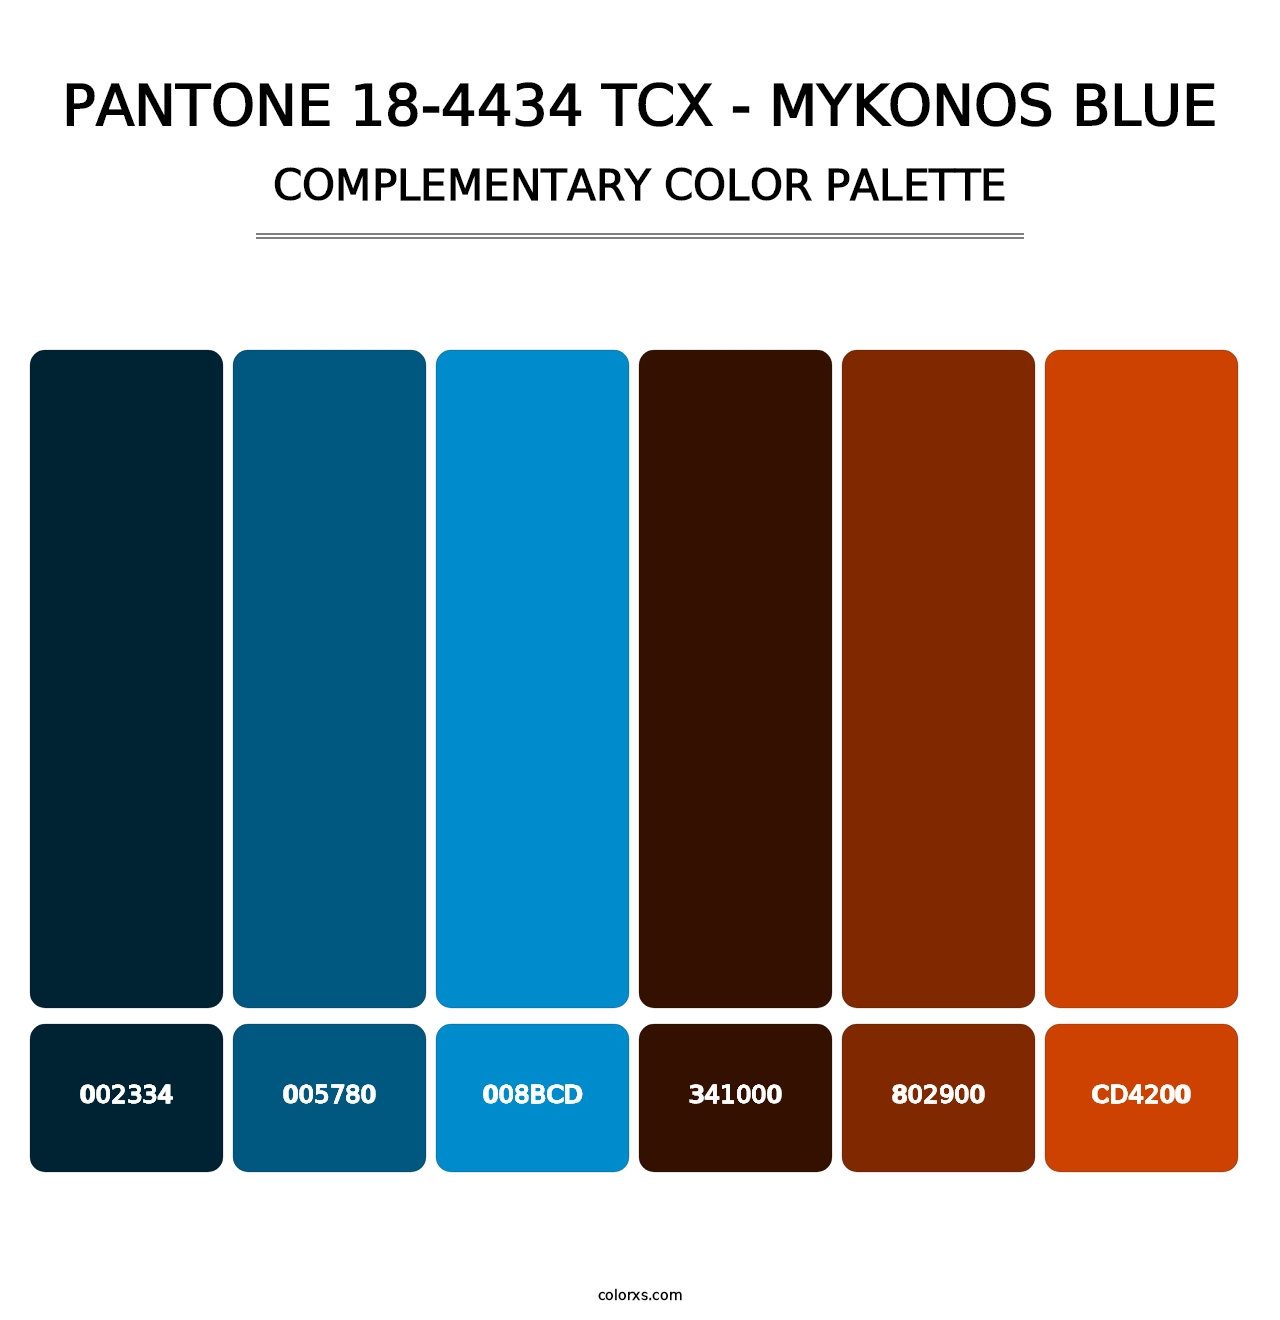 PANTONE 18-4434 TCX - Mykonos Blue - Complementary Color Palette